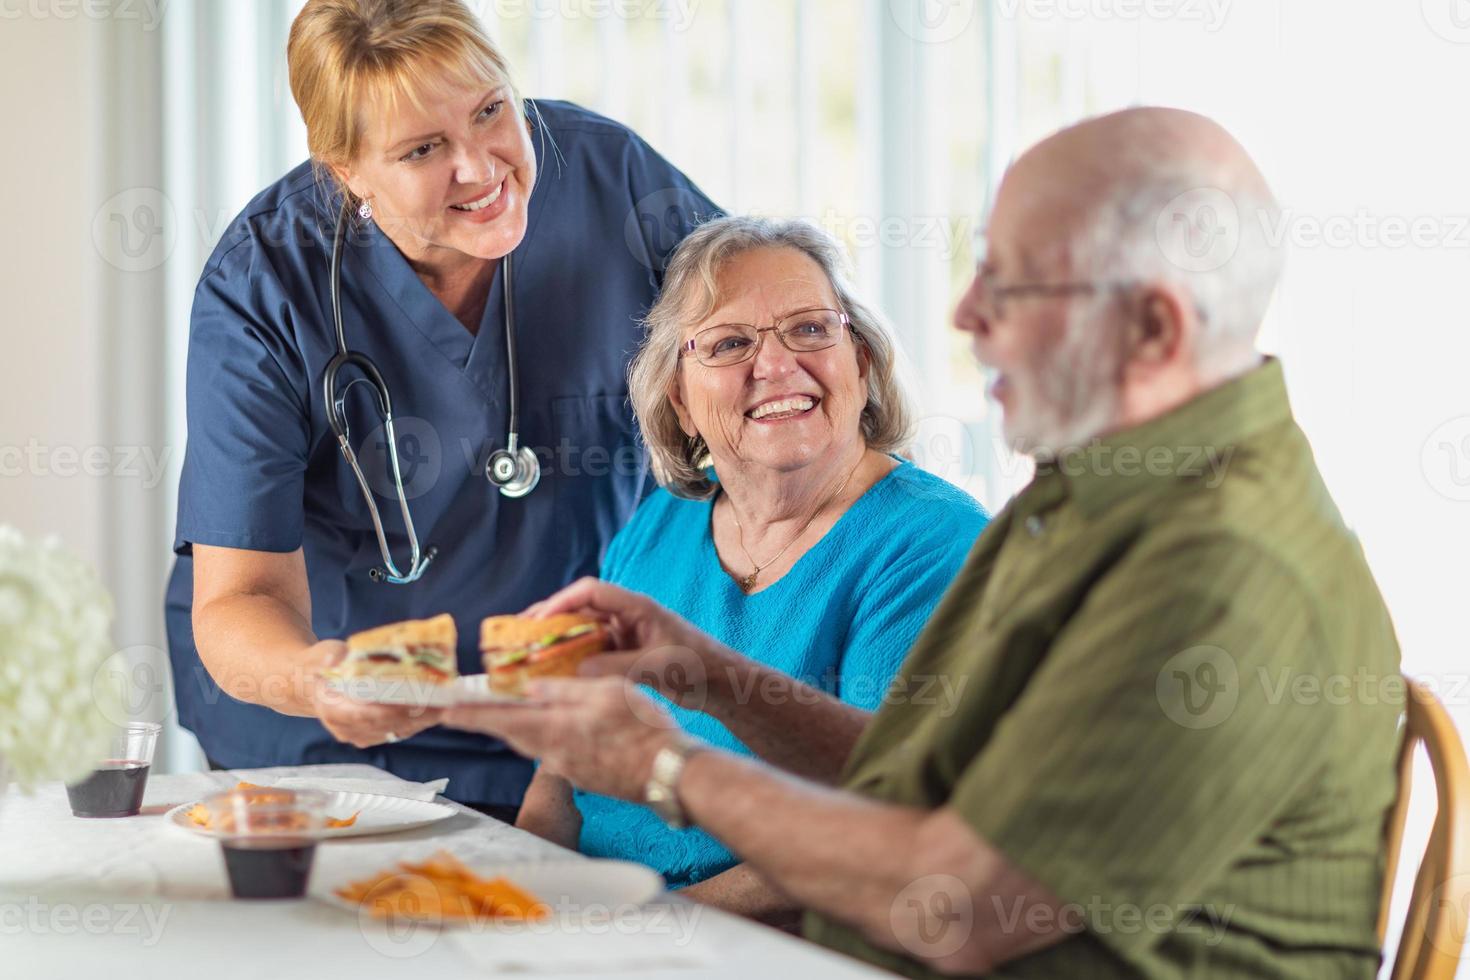 ärztin oder krankenschwester serviert senioren paar sandwiches am tisch foto